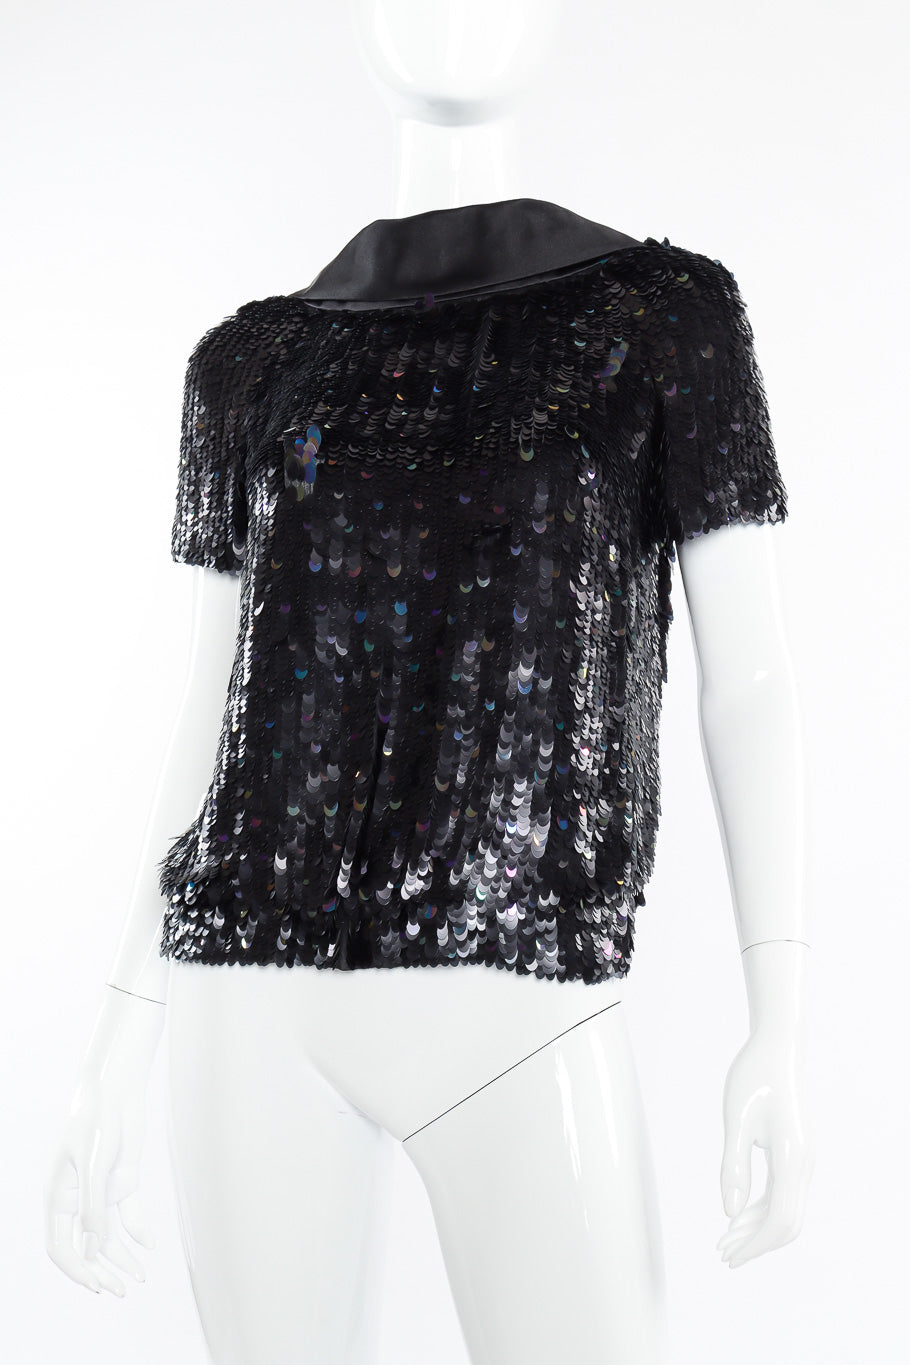 Louis Vuitton sequin blouse on mannequin @recessla